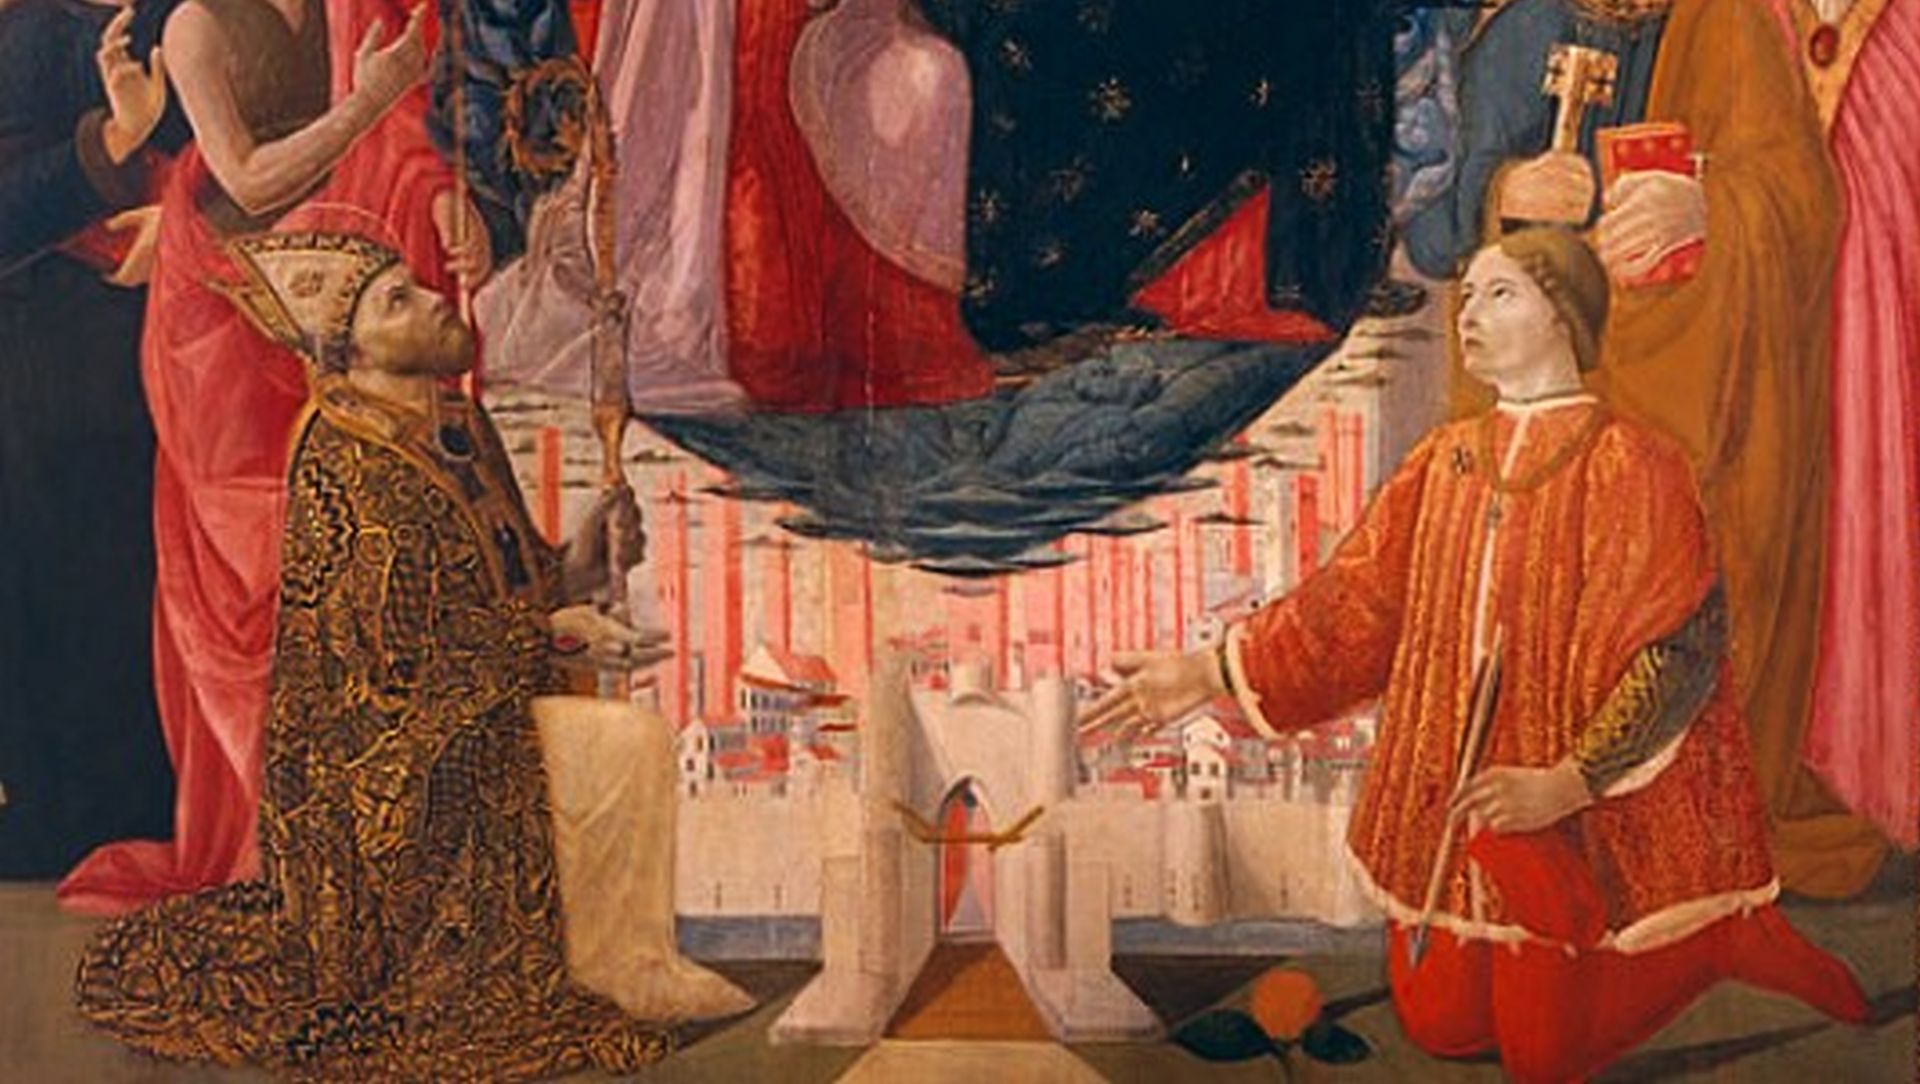 dipinto di Baldassarre di Biagio nella chiesa di san Paolino